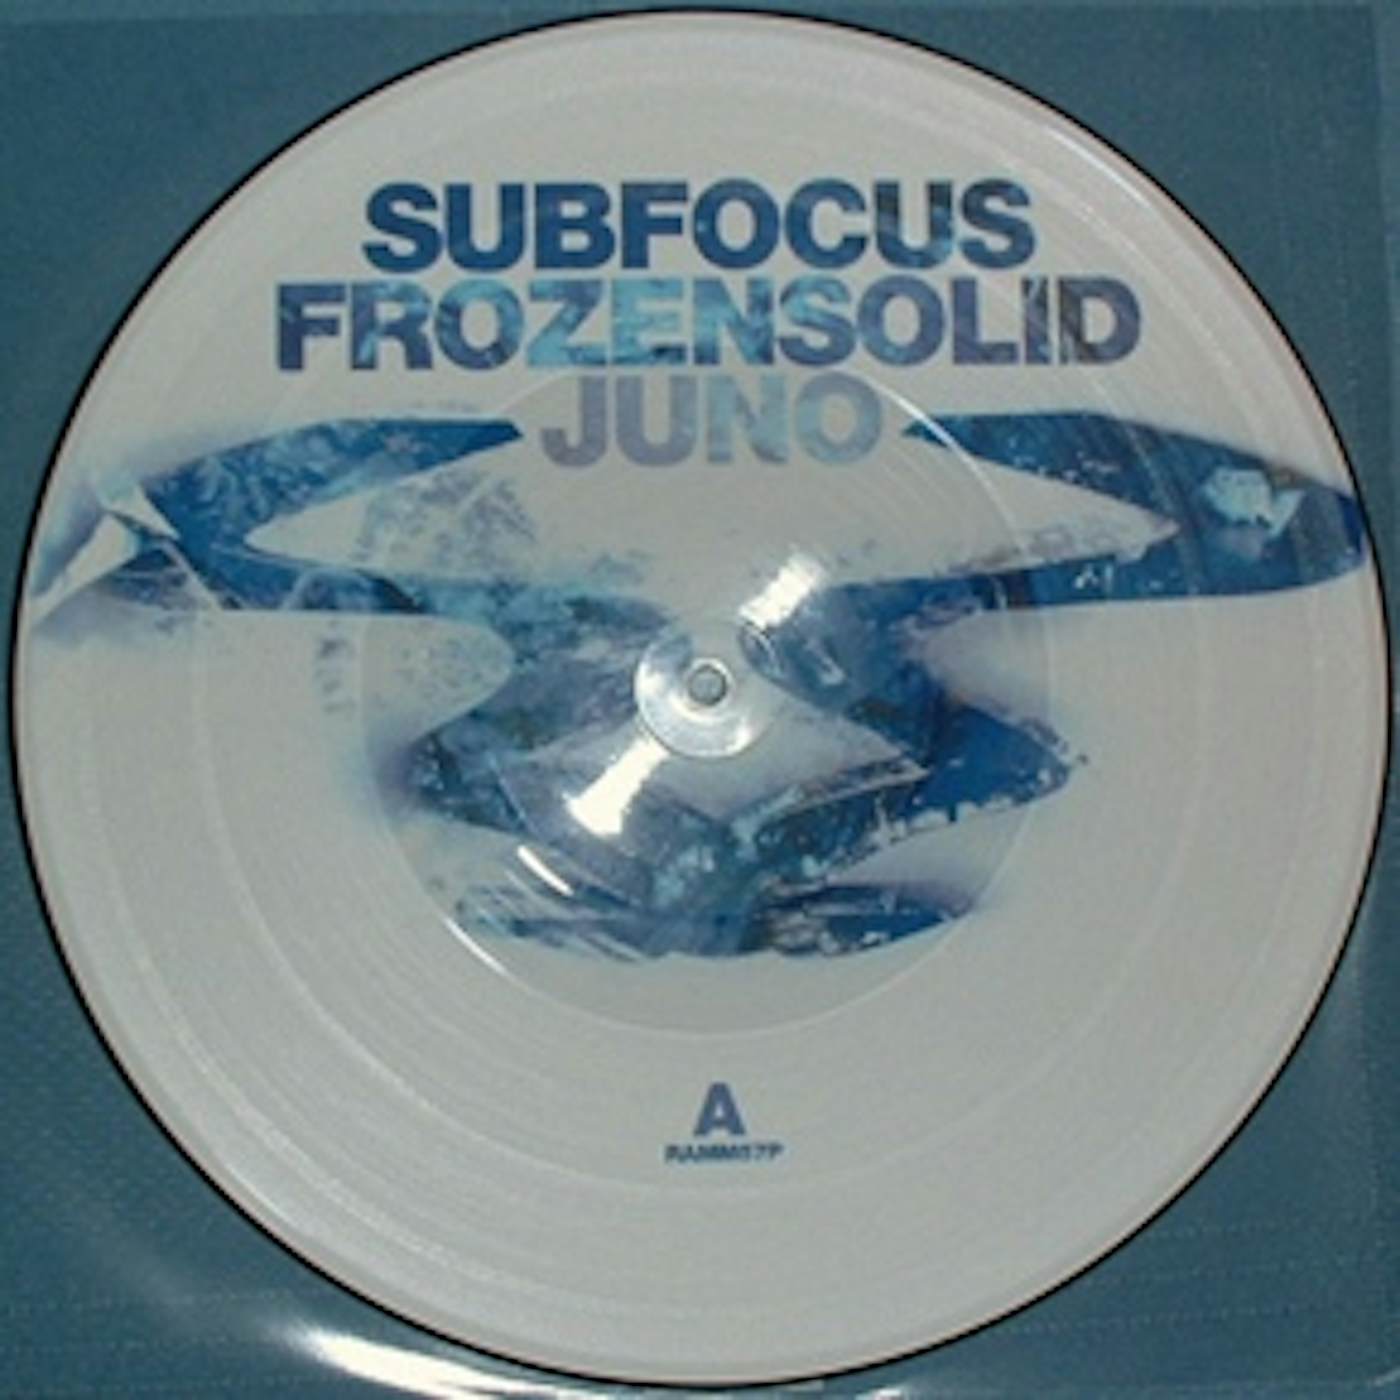 Sub Focus FROZEN SOLID/JUNO Vinyl Record - UK Release